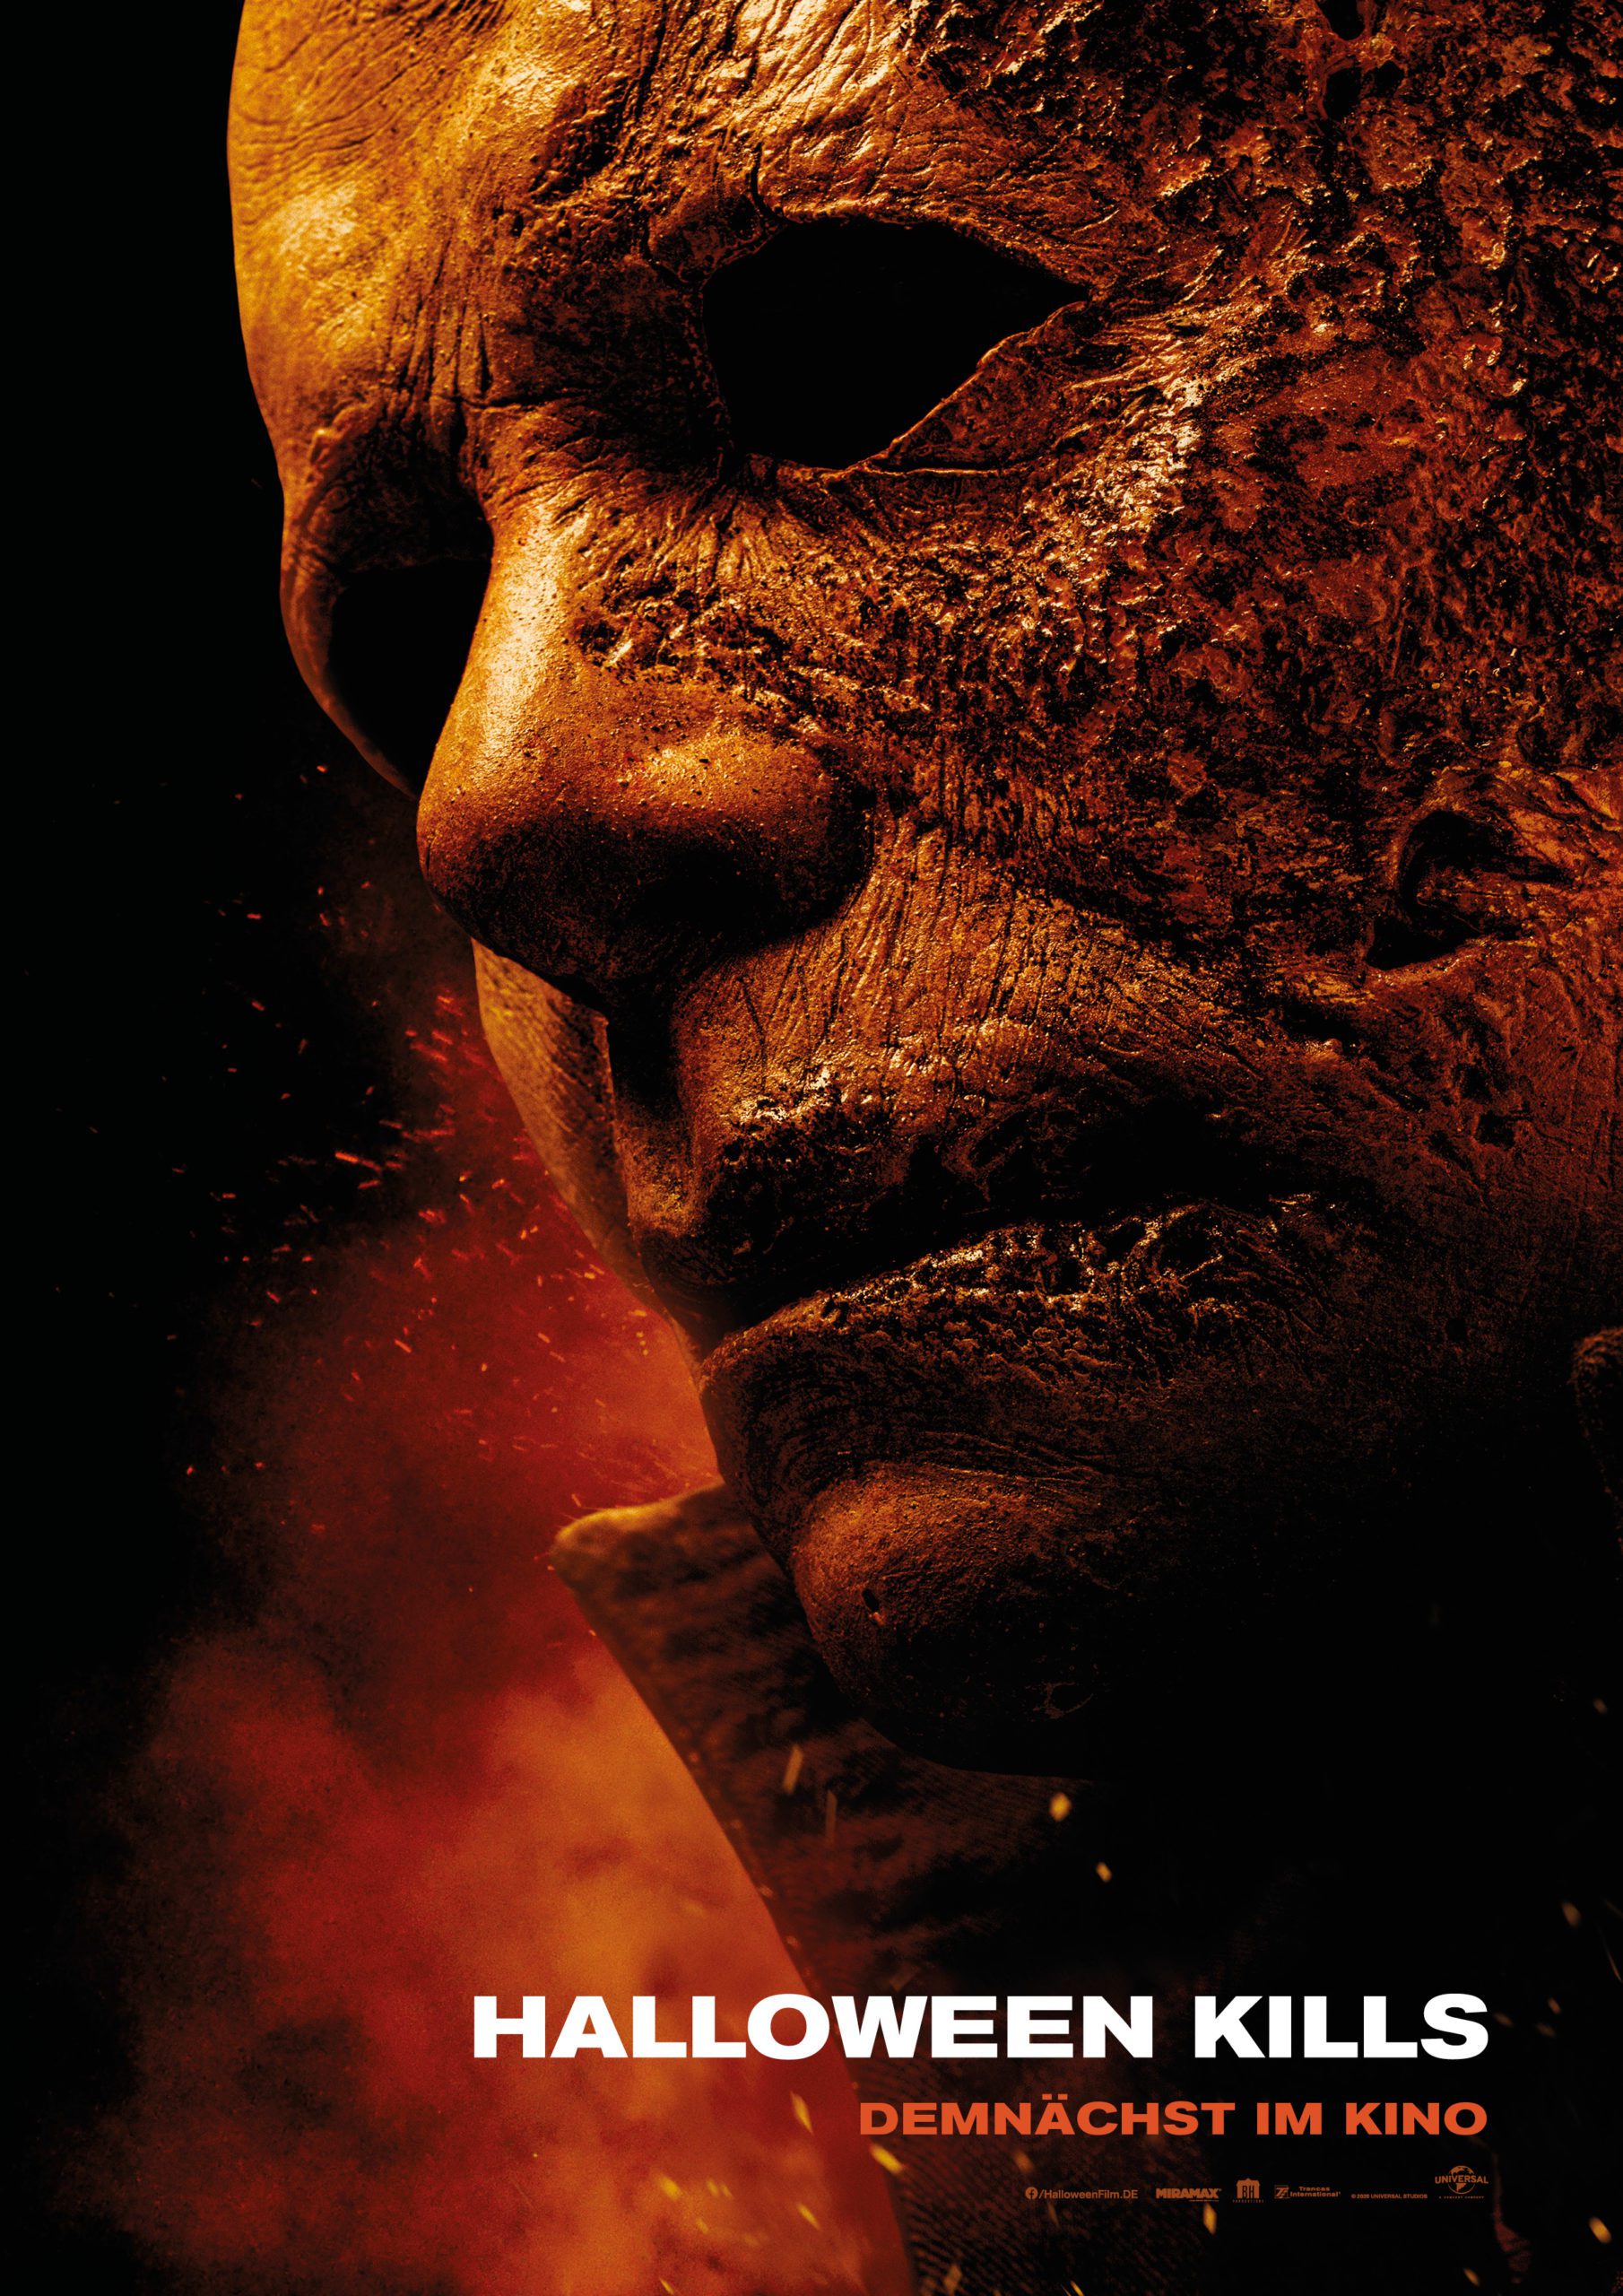 Film Kritik "Halloween Kills": Es wird Zeit, dass Michael Myers (s)ein Ende findet